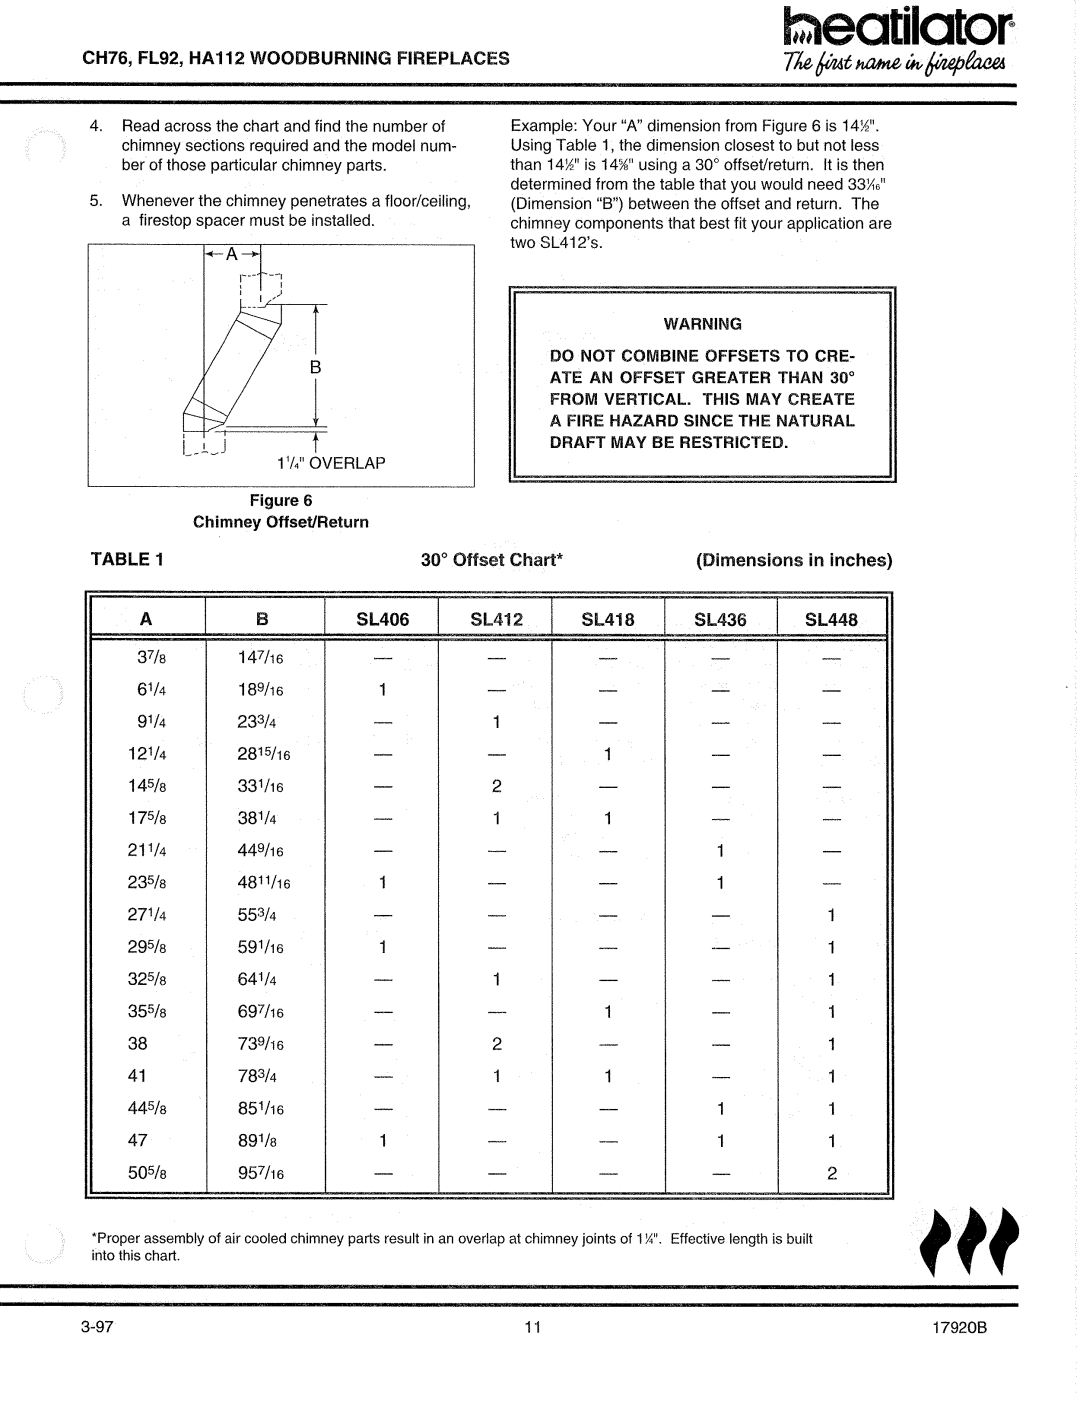 Heatiator CH76 manual 